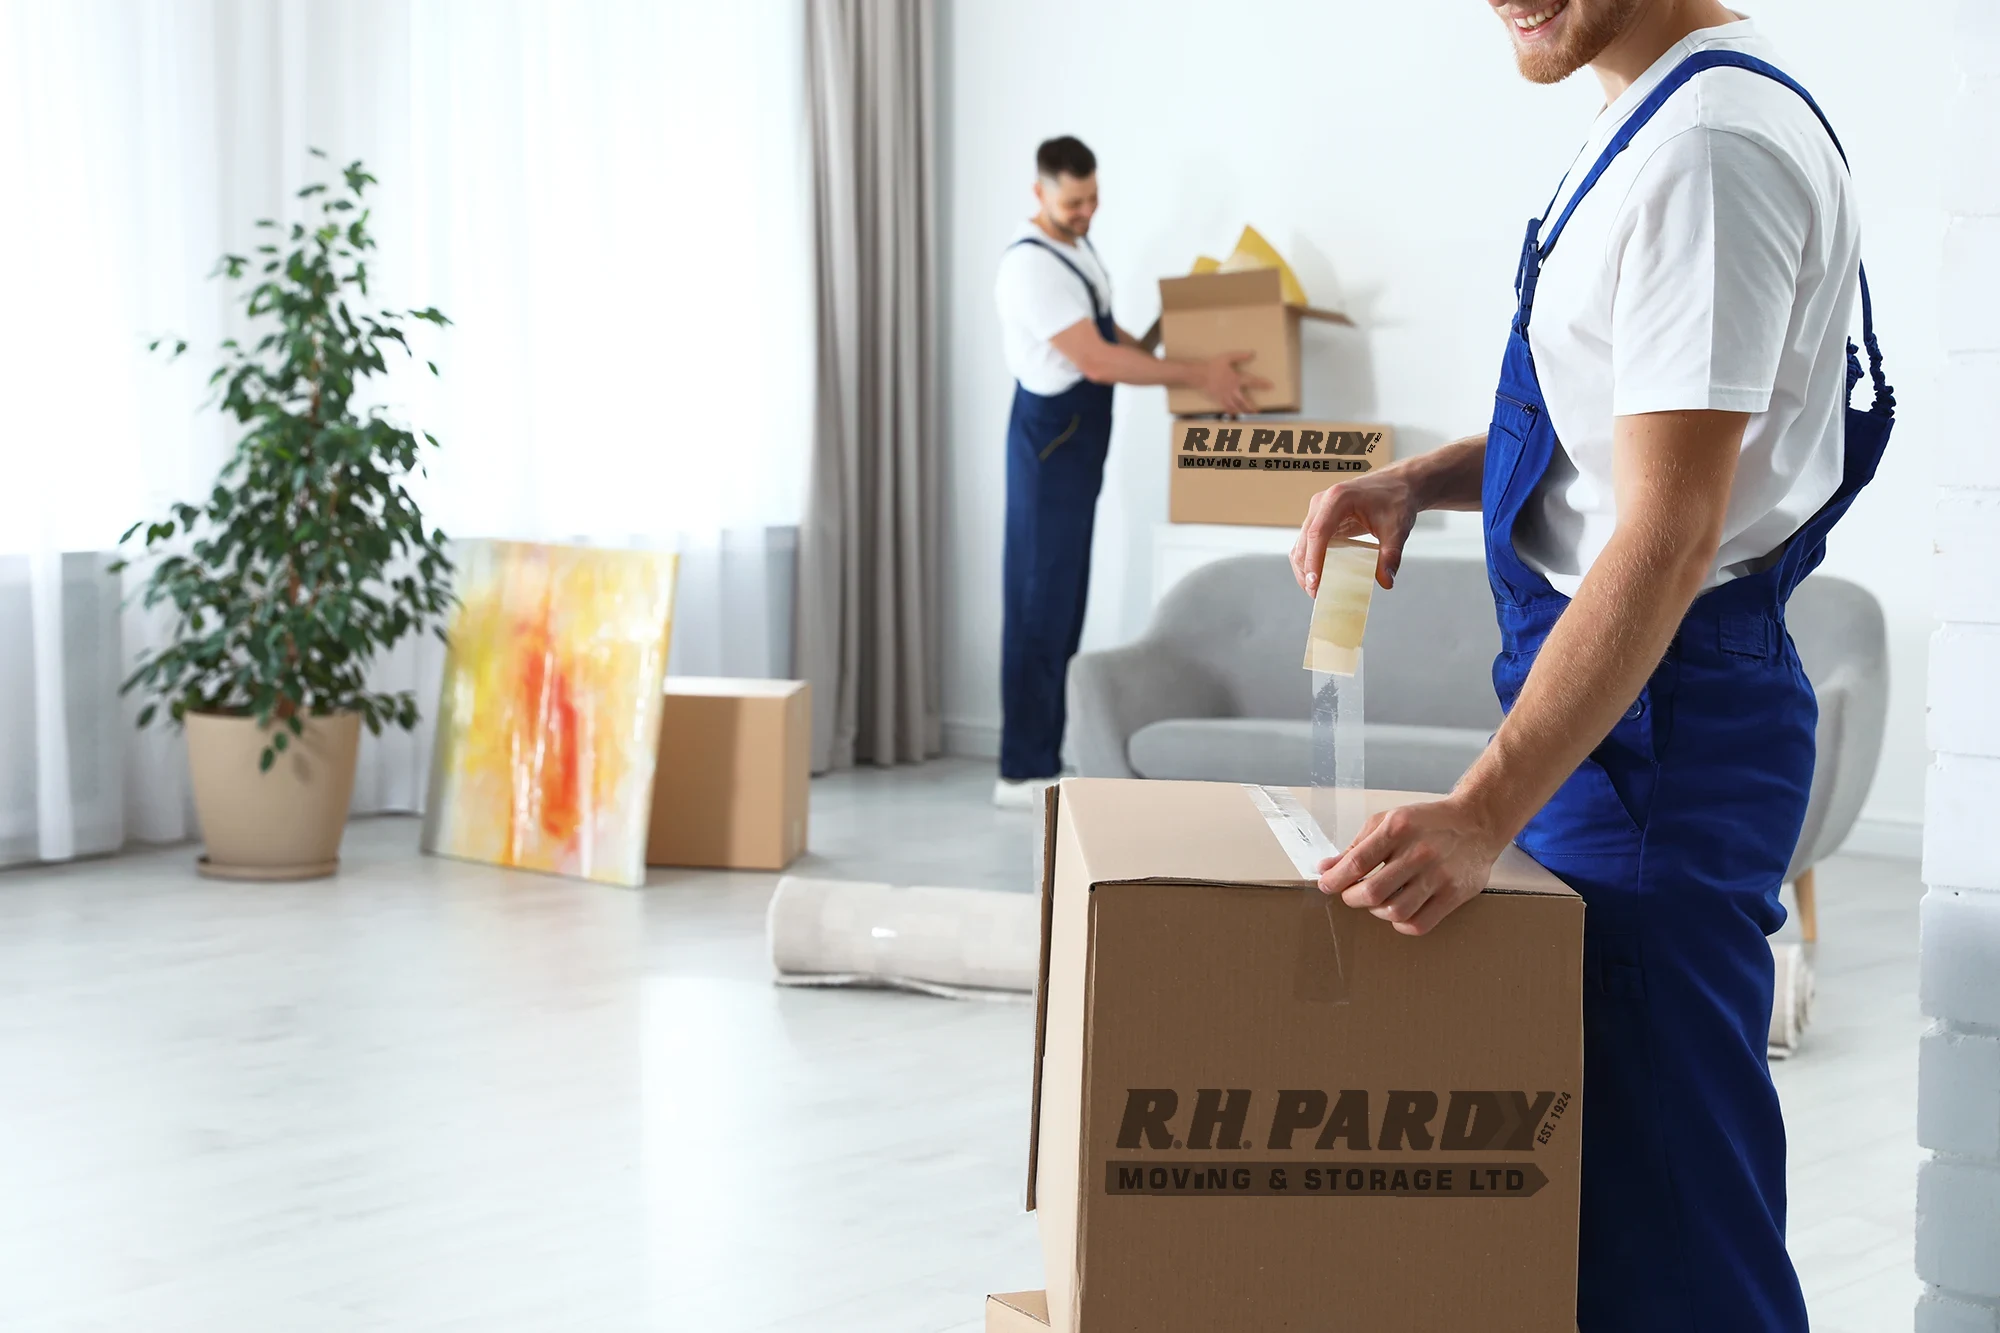 Moving-service-packing-furniture-logo